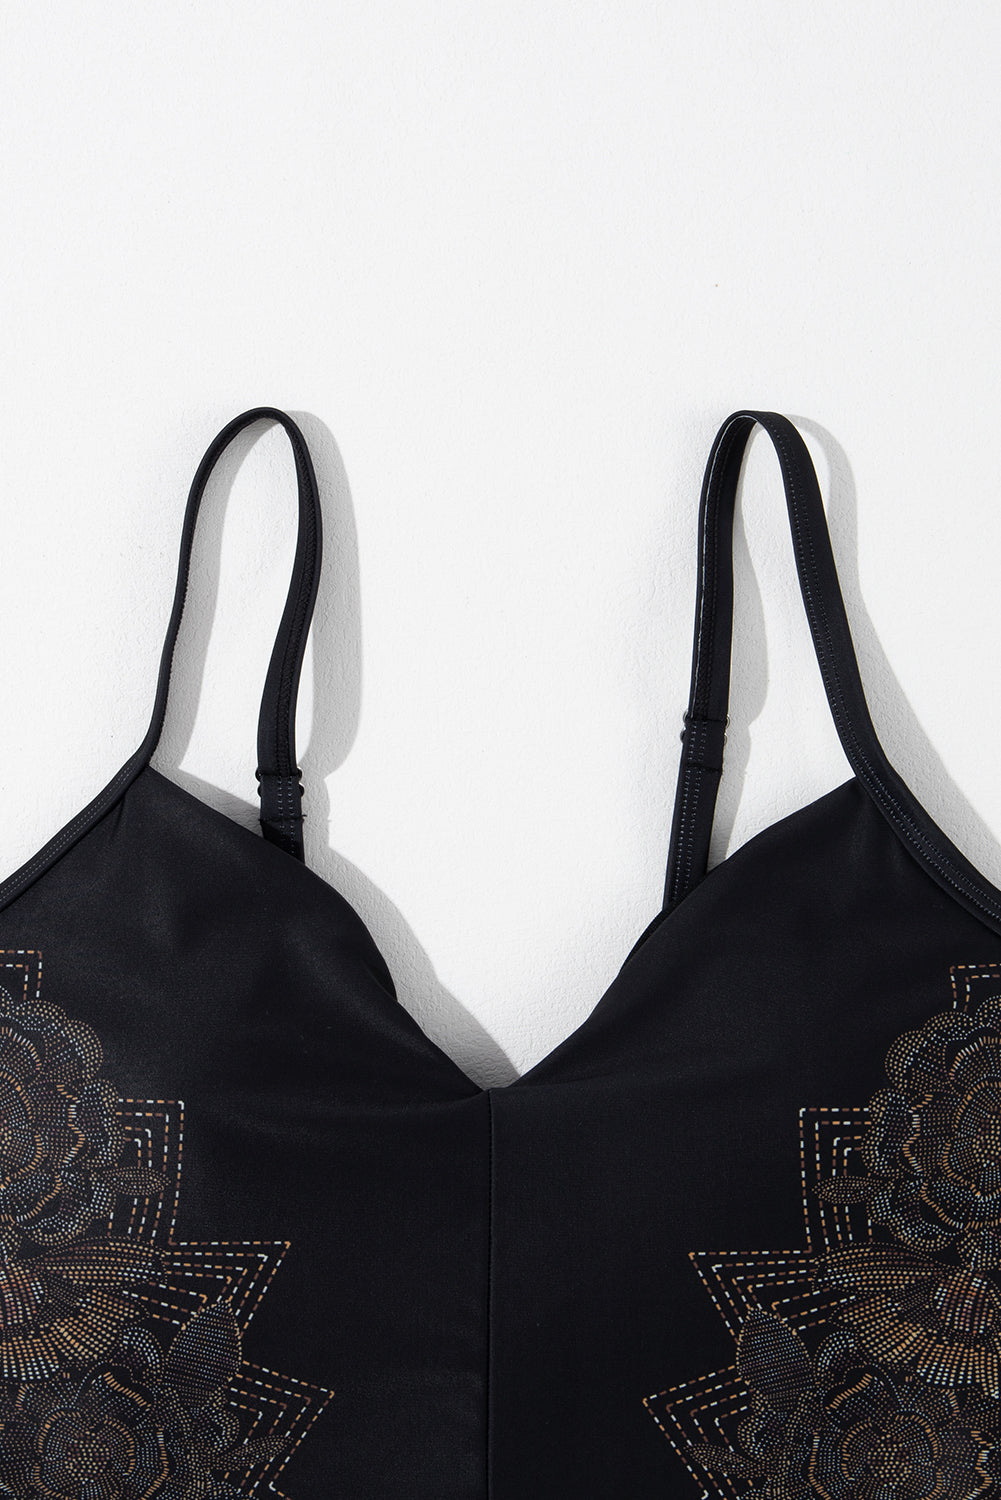 Schwarzer Badeanzug mit überkreuzten Spaghettiträgern und Blütenblattmuster am Rücken